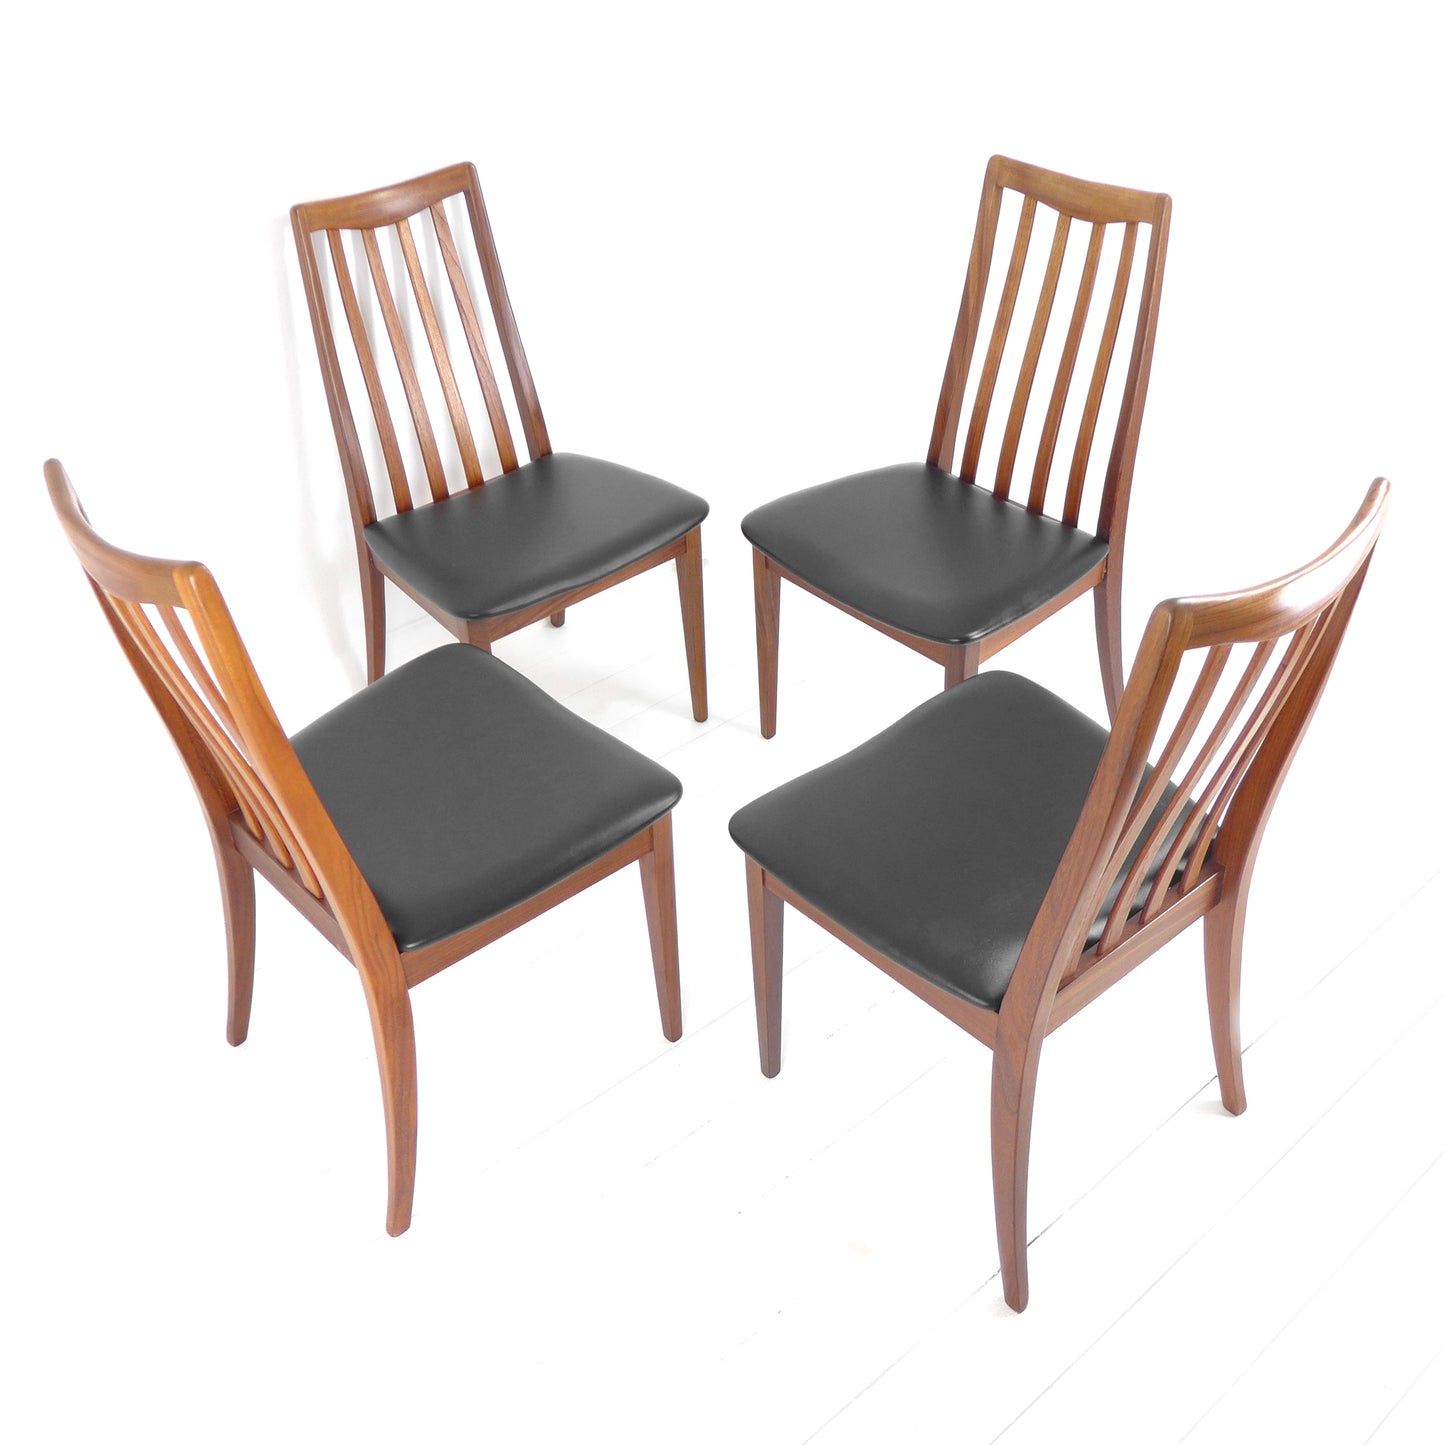 Refurbished G PLAN Fresco Dining Chairs - Mid Century Teak Set of 4